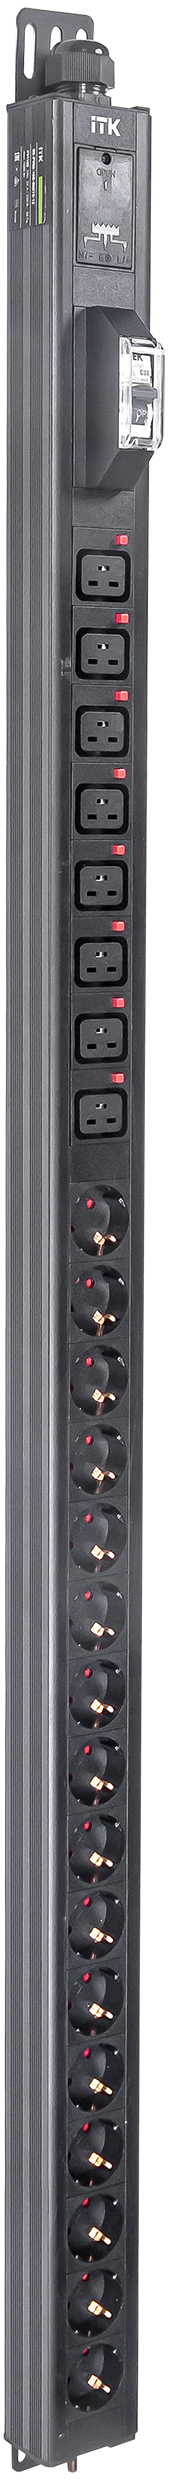 ITK BASE PDU вертикальный PV1102 30U 1 фаза 32А 16 розеток SCHUKO (немецкий стандарт) + 8 розеток C19 без кабеля с клеммной колодкой